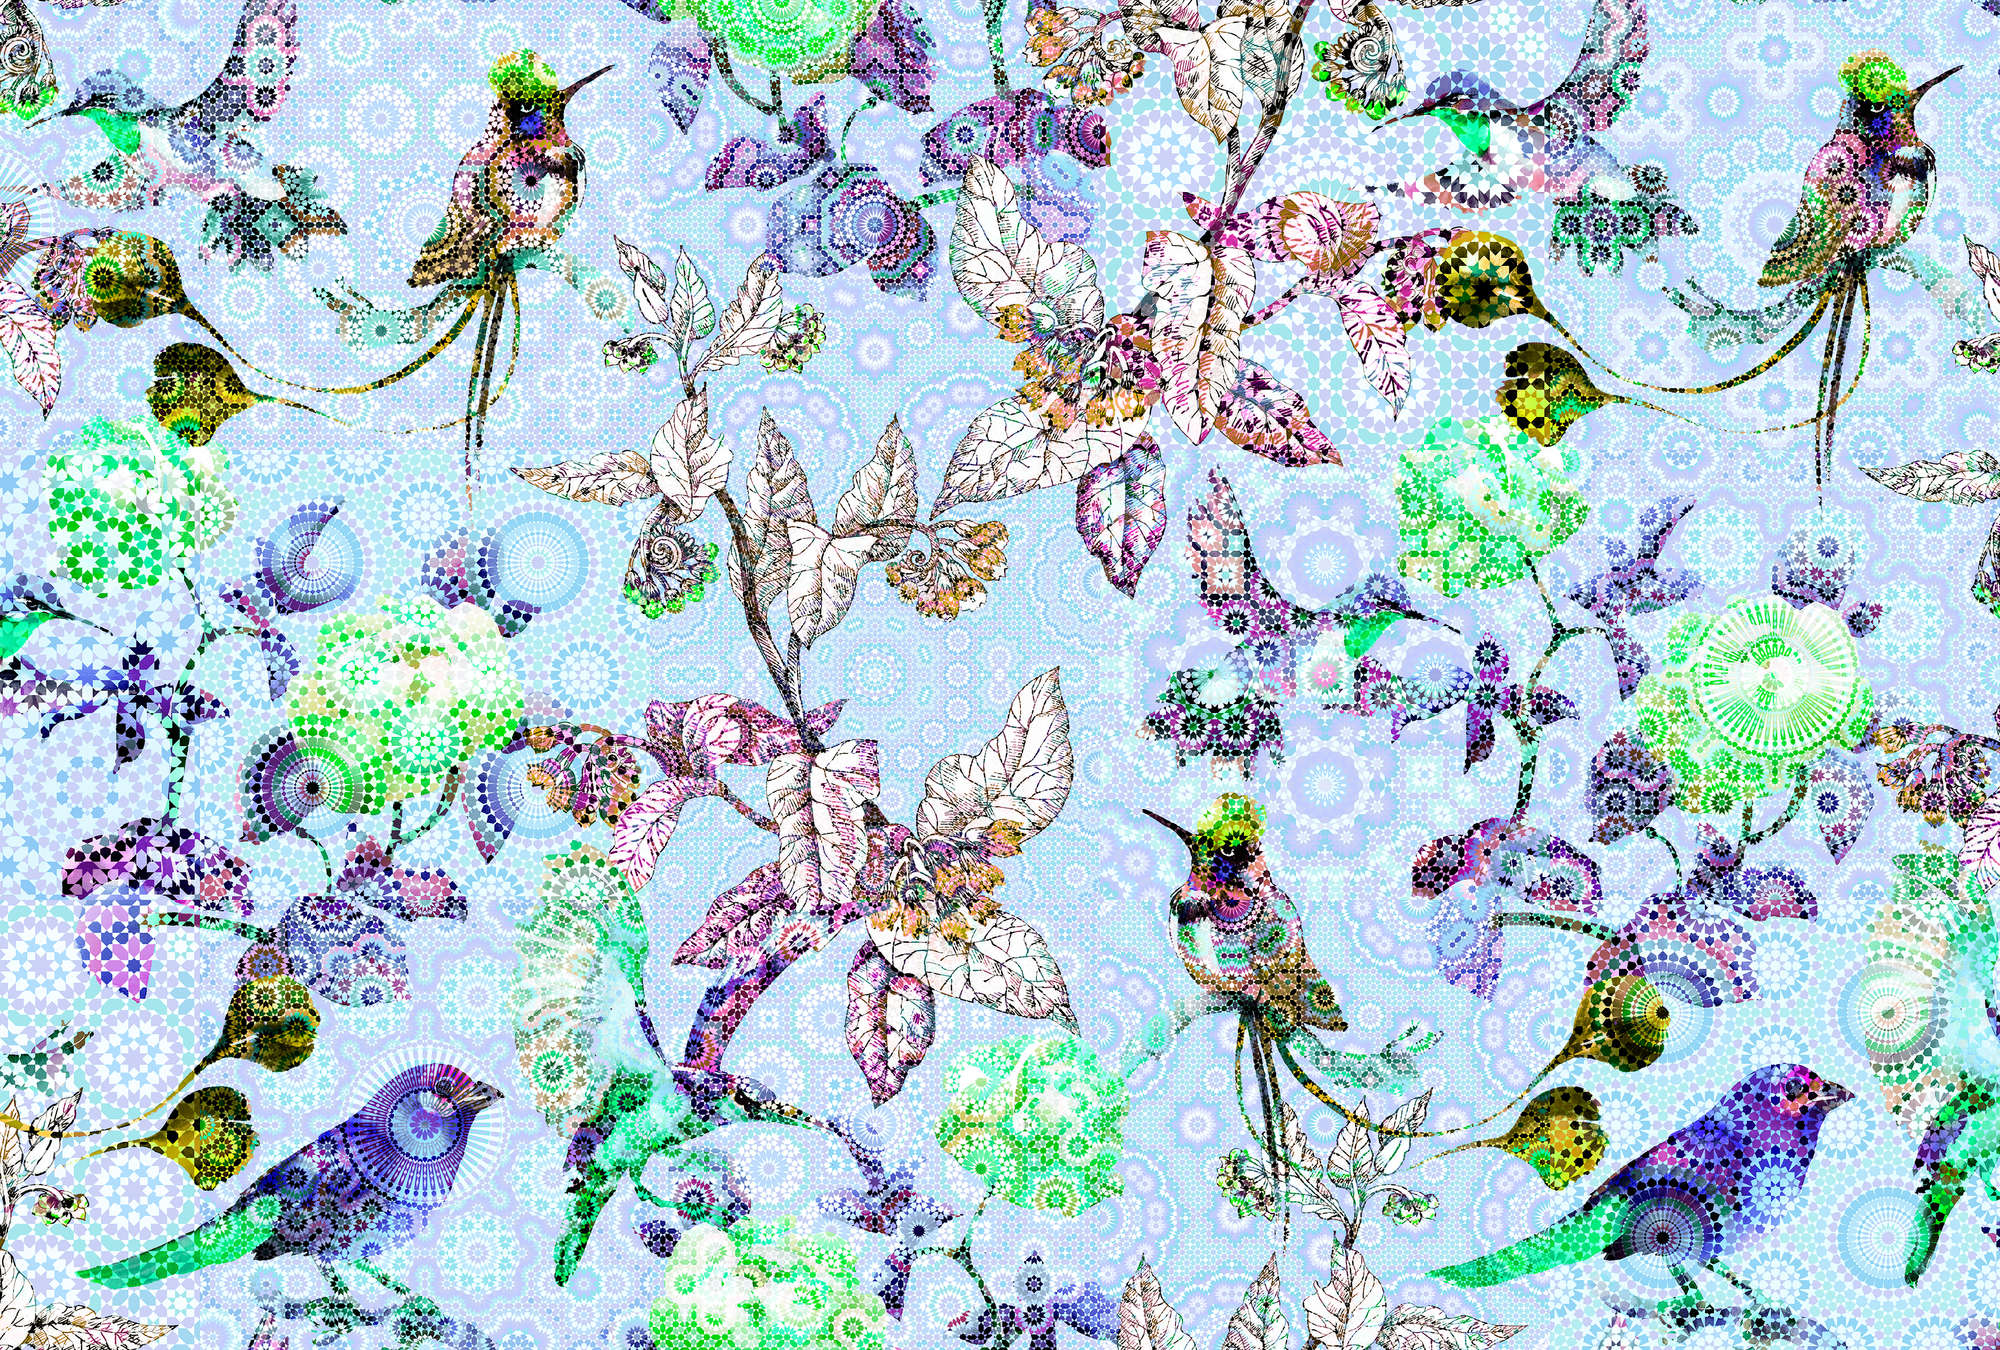             Papel pintado de flores y pájaros estilo mosaico - Azul, Verde
        